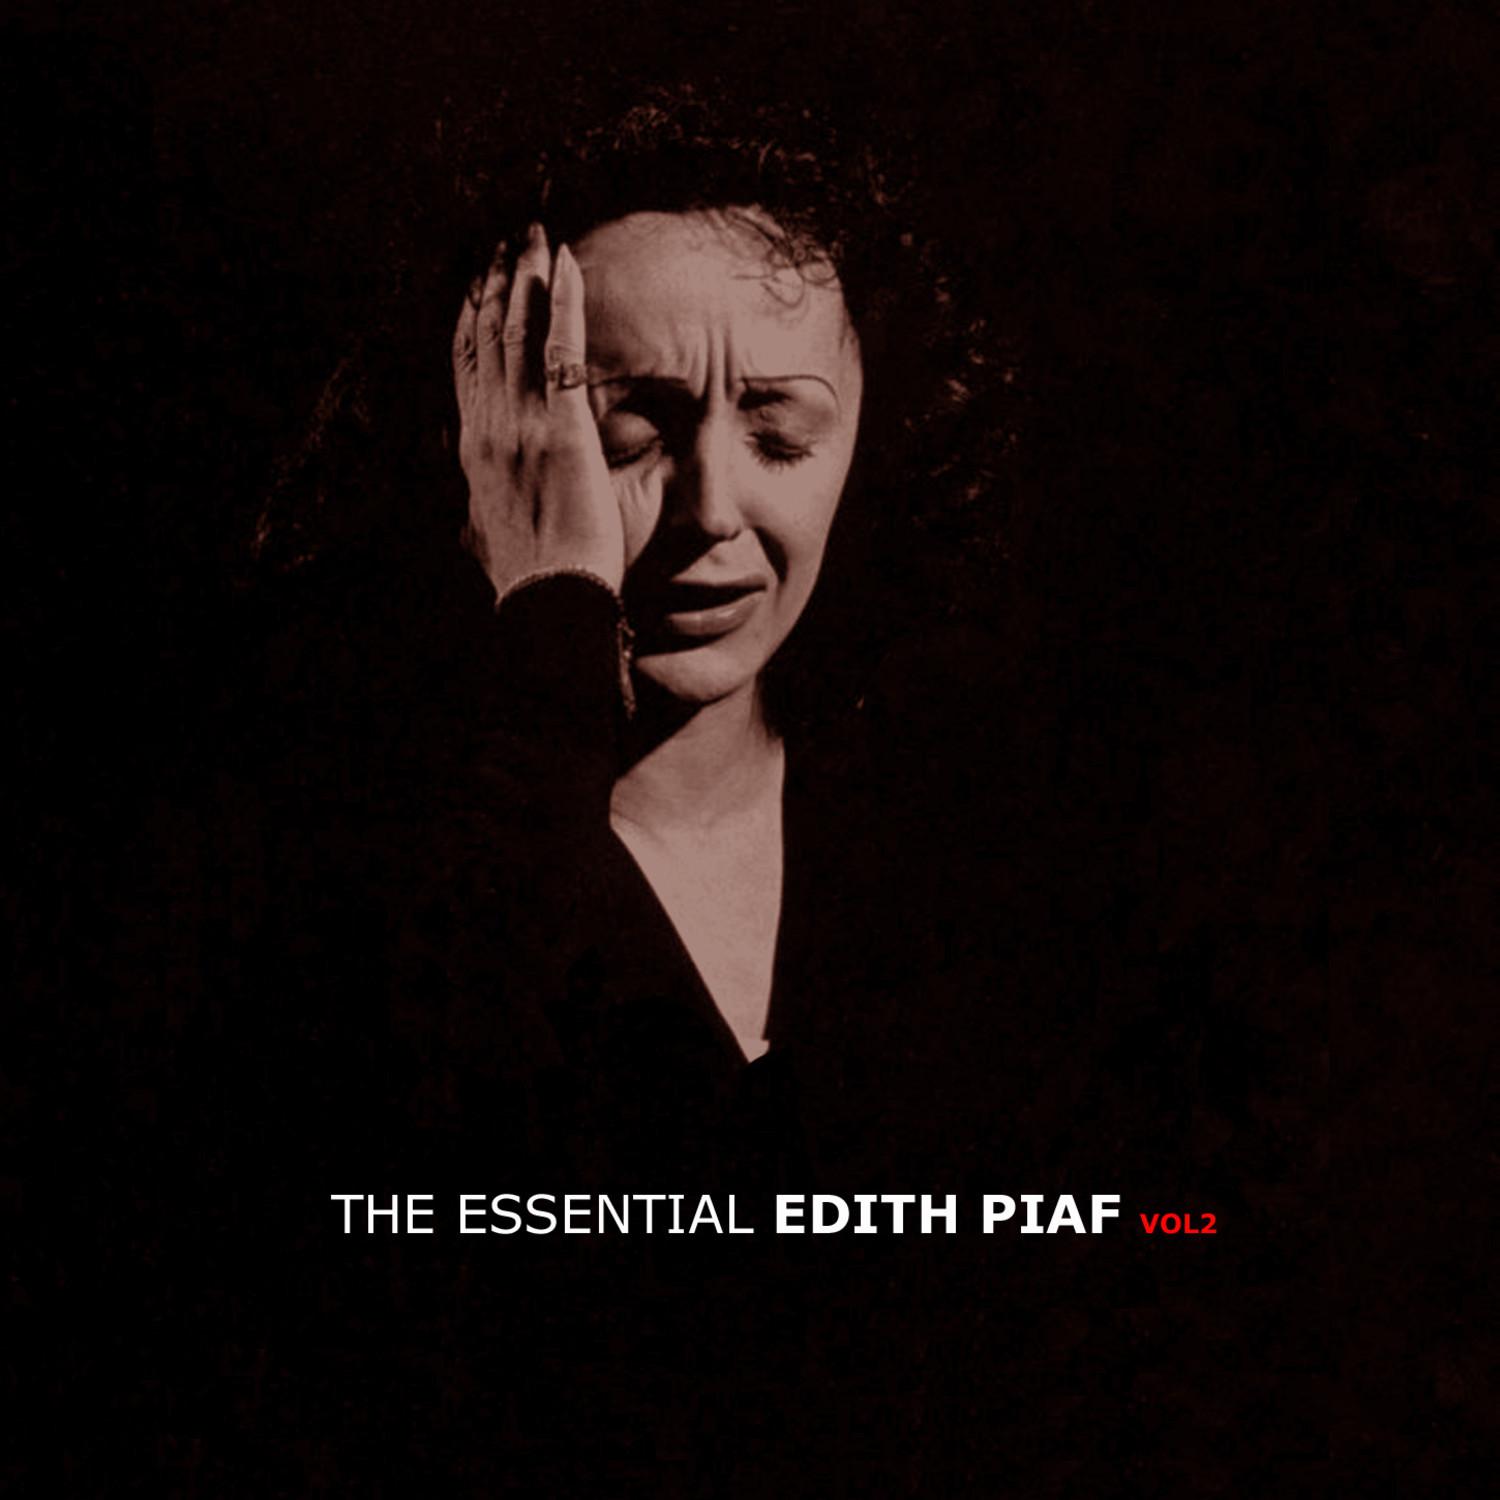 The Essential Edith Piaf Vol 2